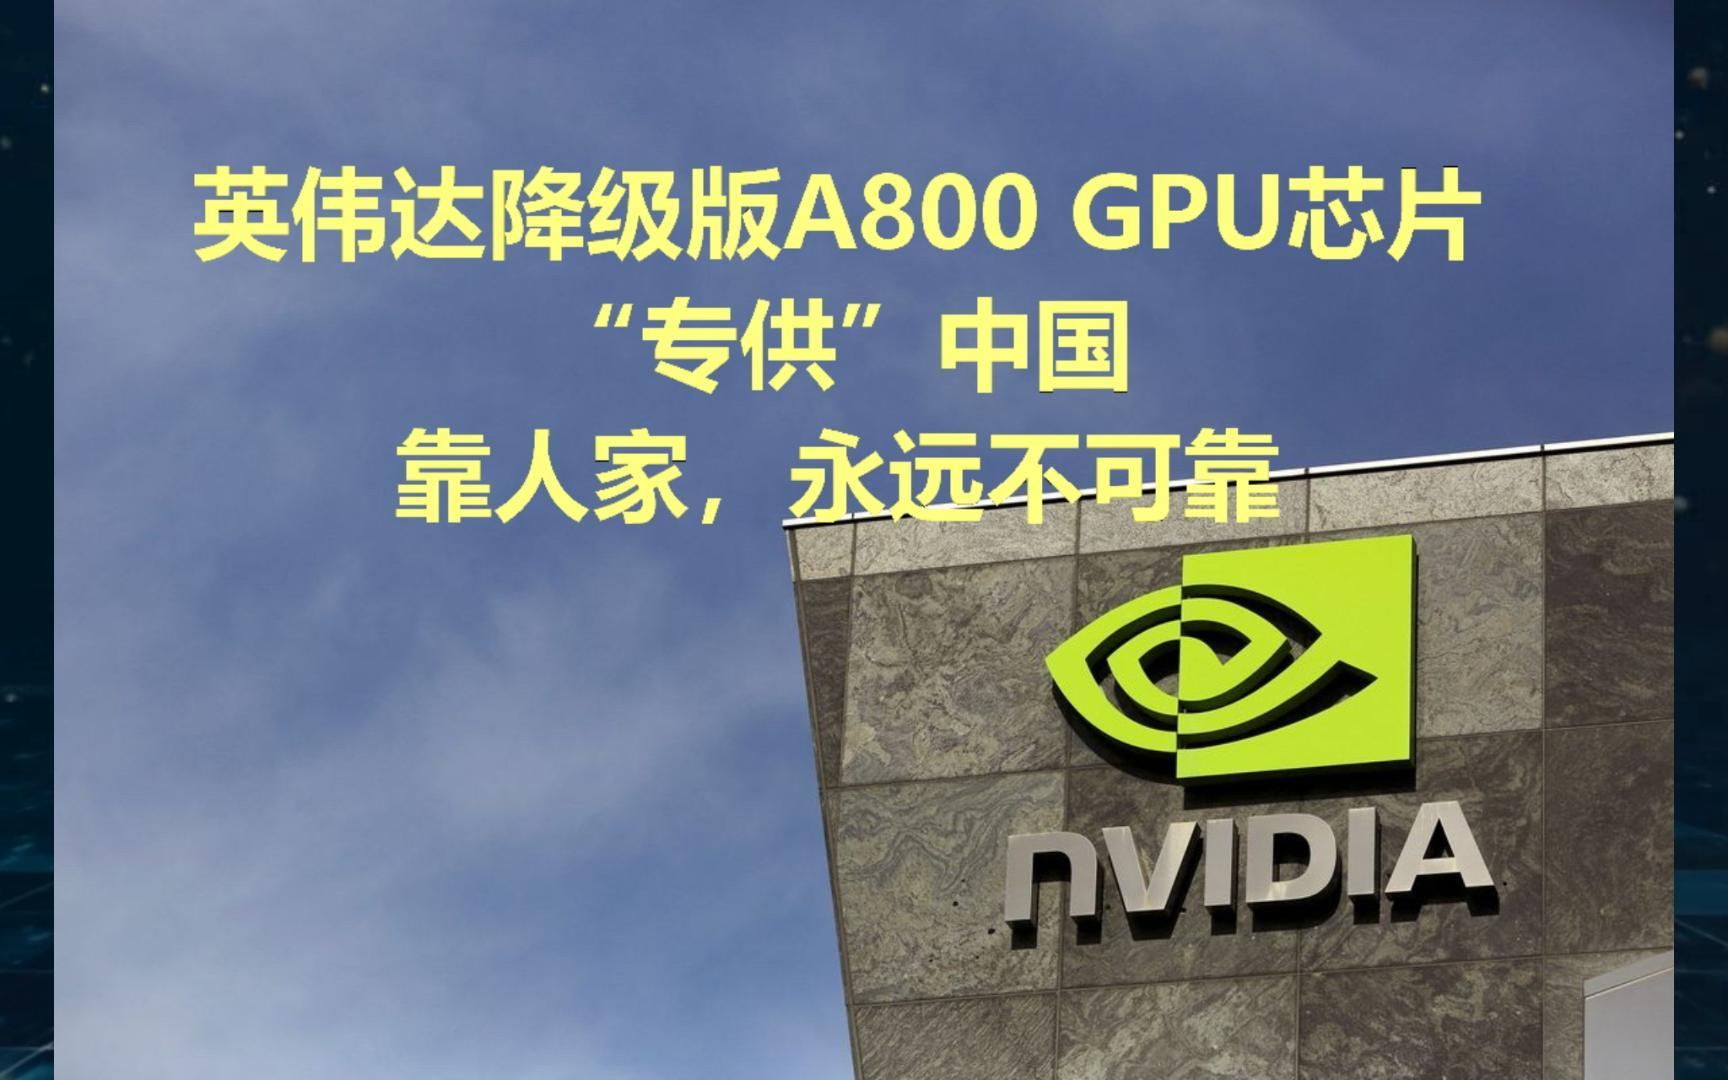 英伟达降级版a800 gpu芯片专供中国,靠人家,永远不可靠